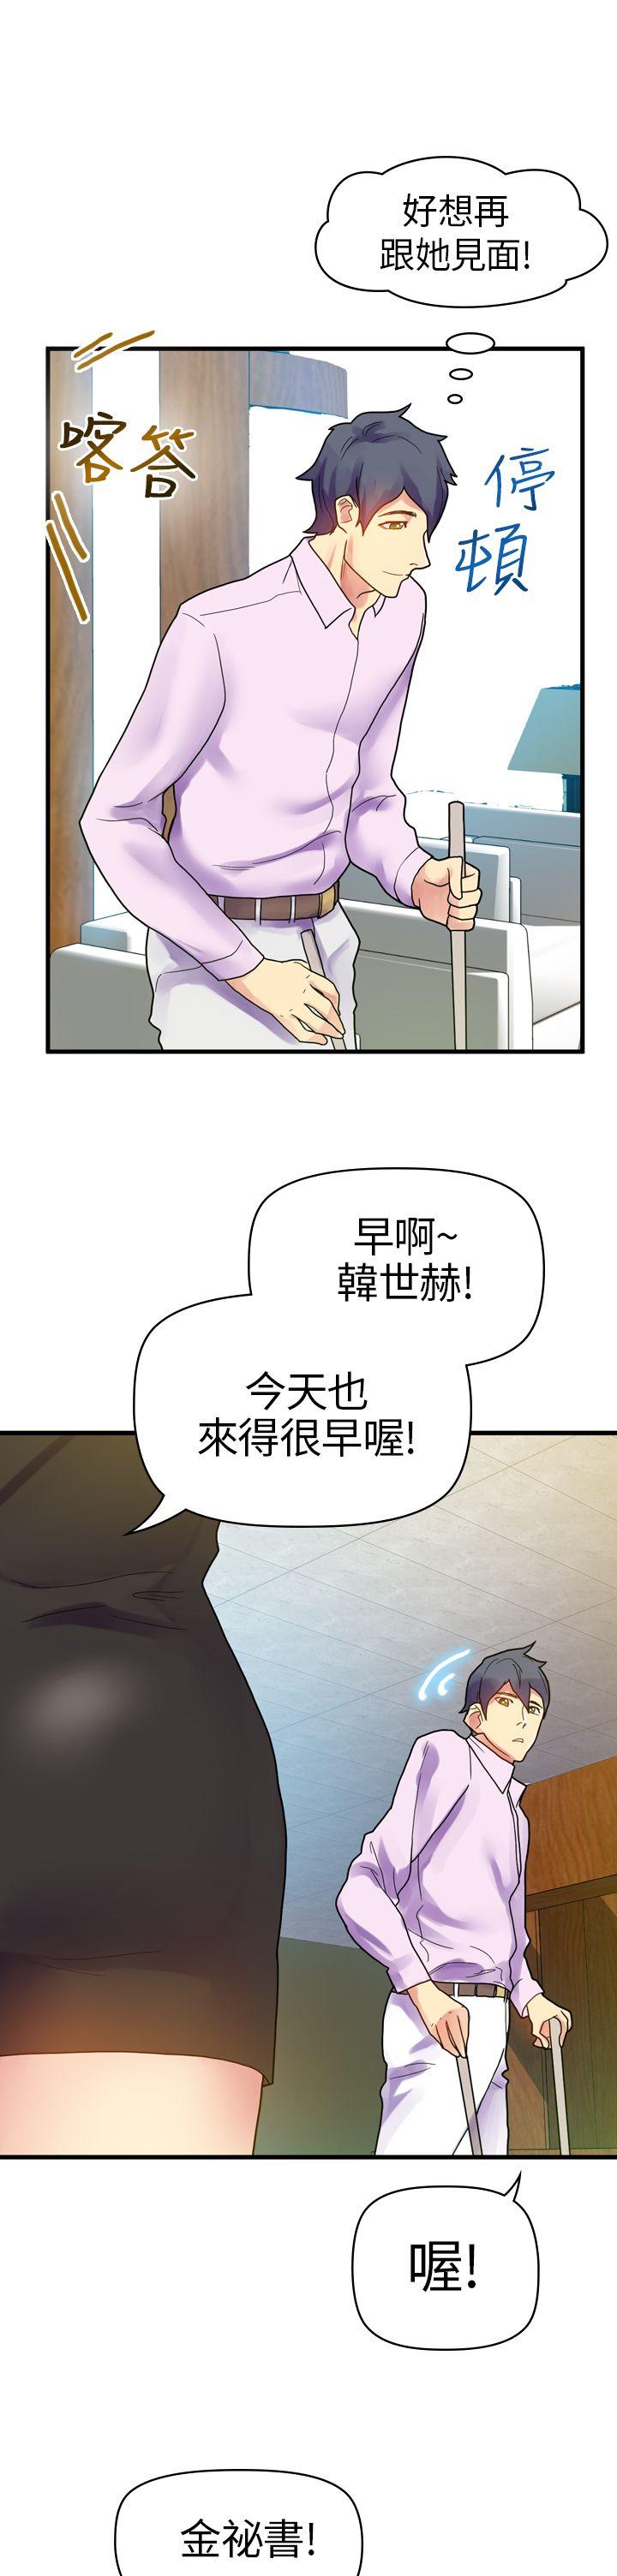 韩国污漫画 幻想中的她(完結) 第10话 3